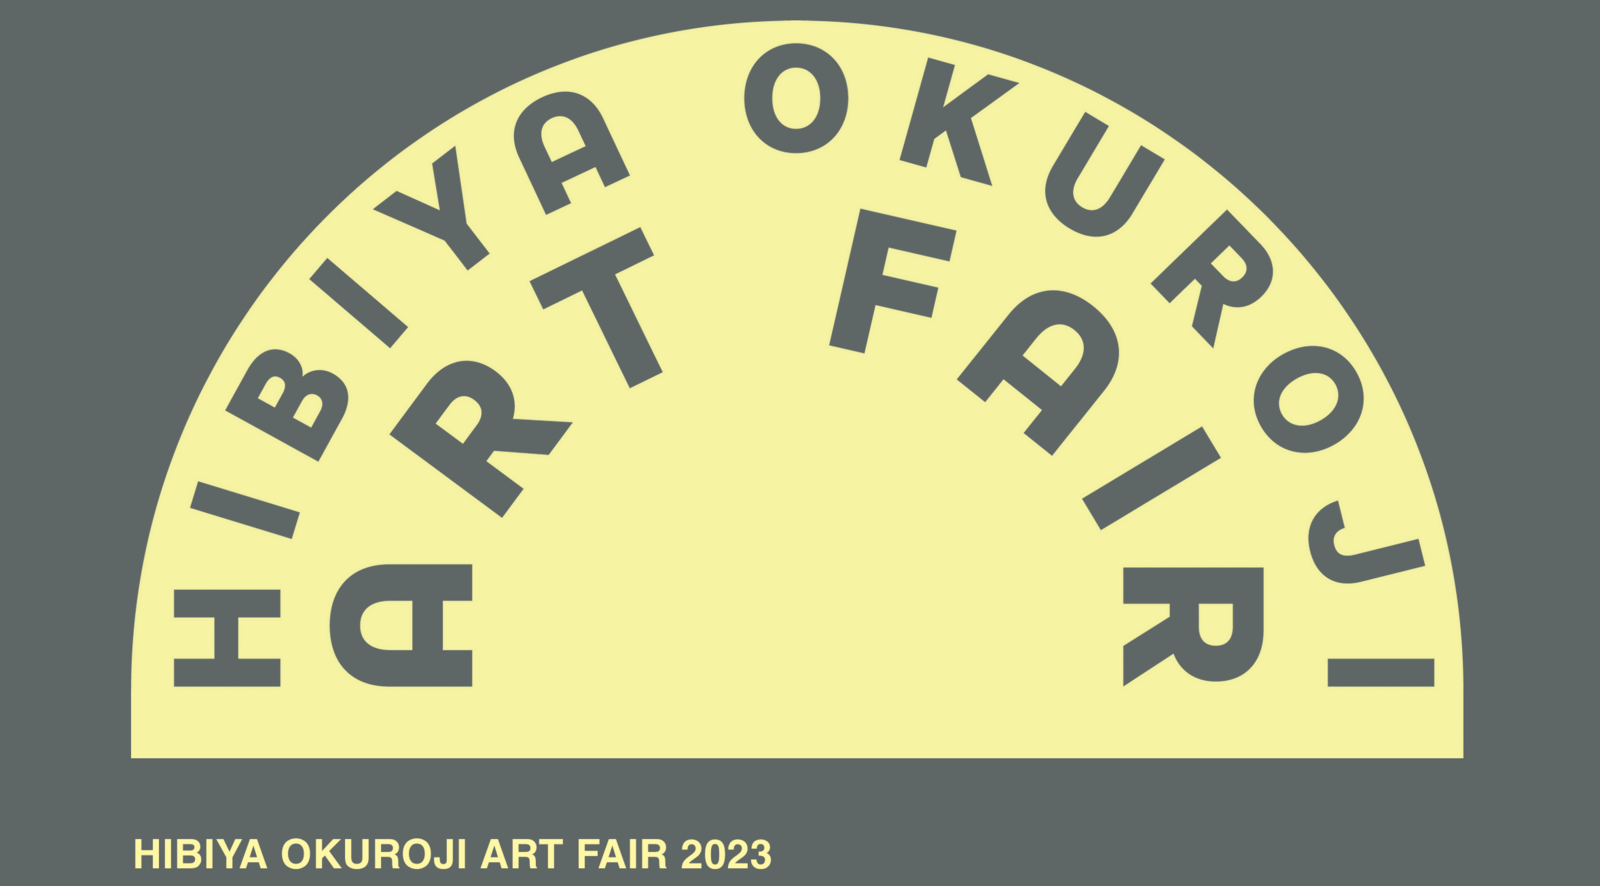 【日比谷】[入場無料] 日比谷の奥路地アートフェア「HIBIYA OKUROJI ART FAIR 2023」に行こう【20-30代社会人】